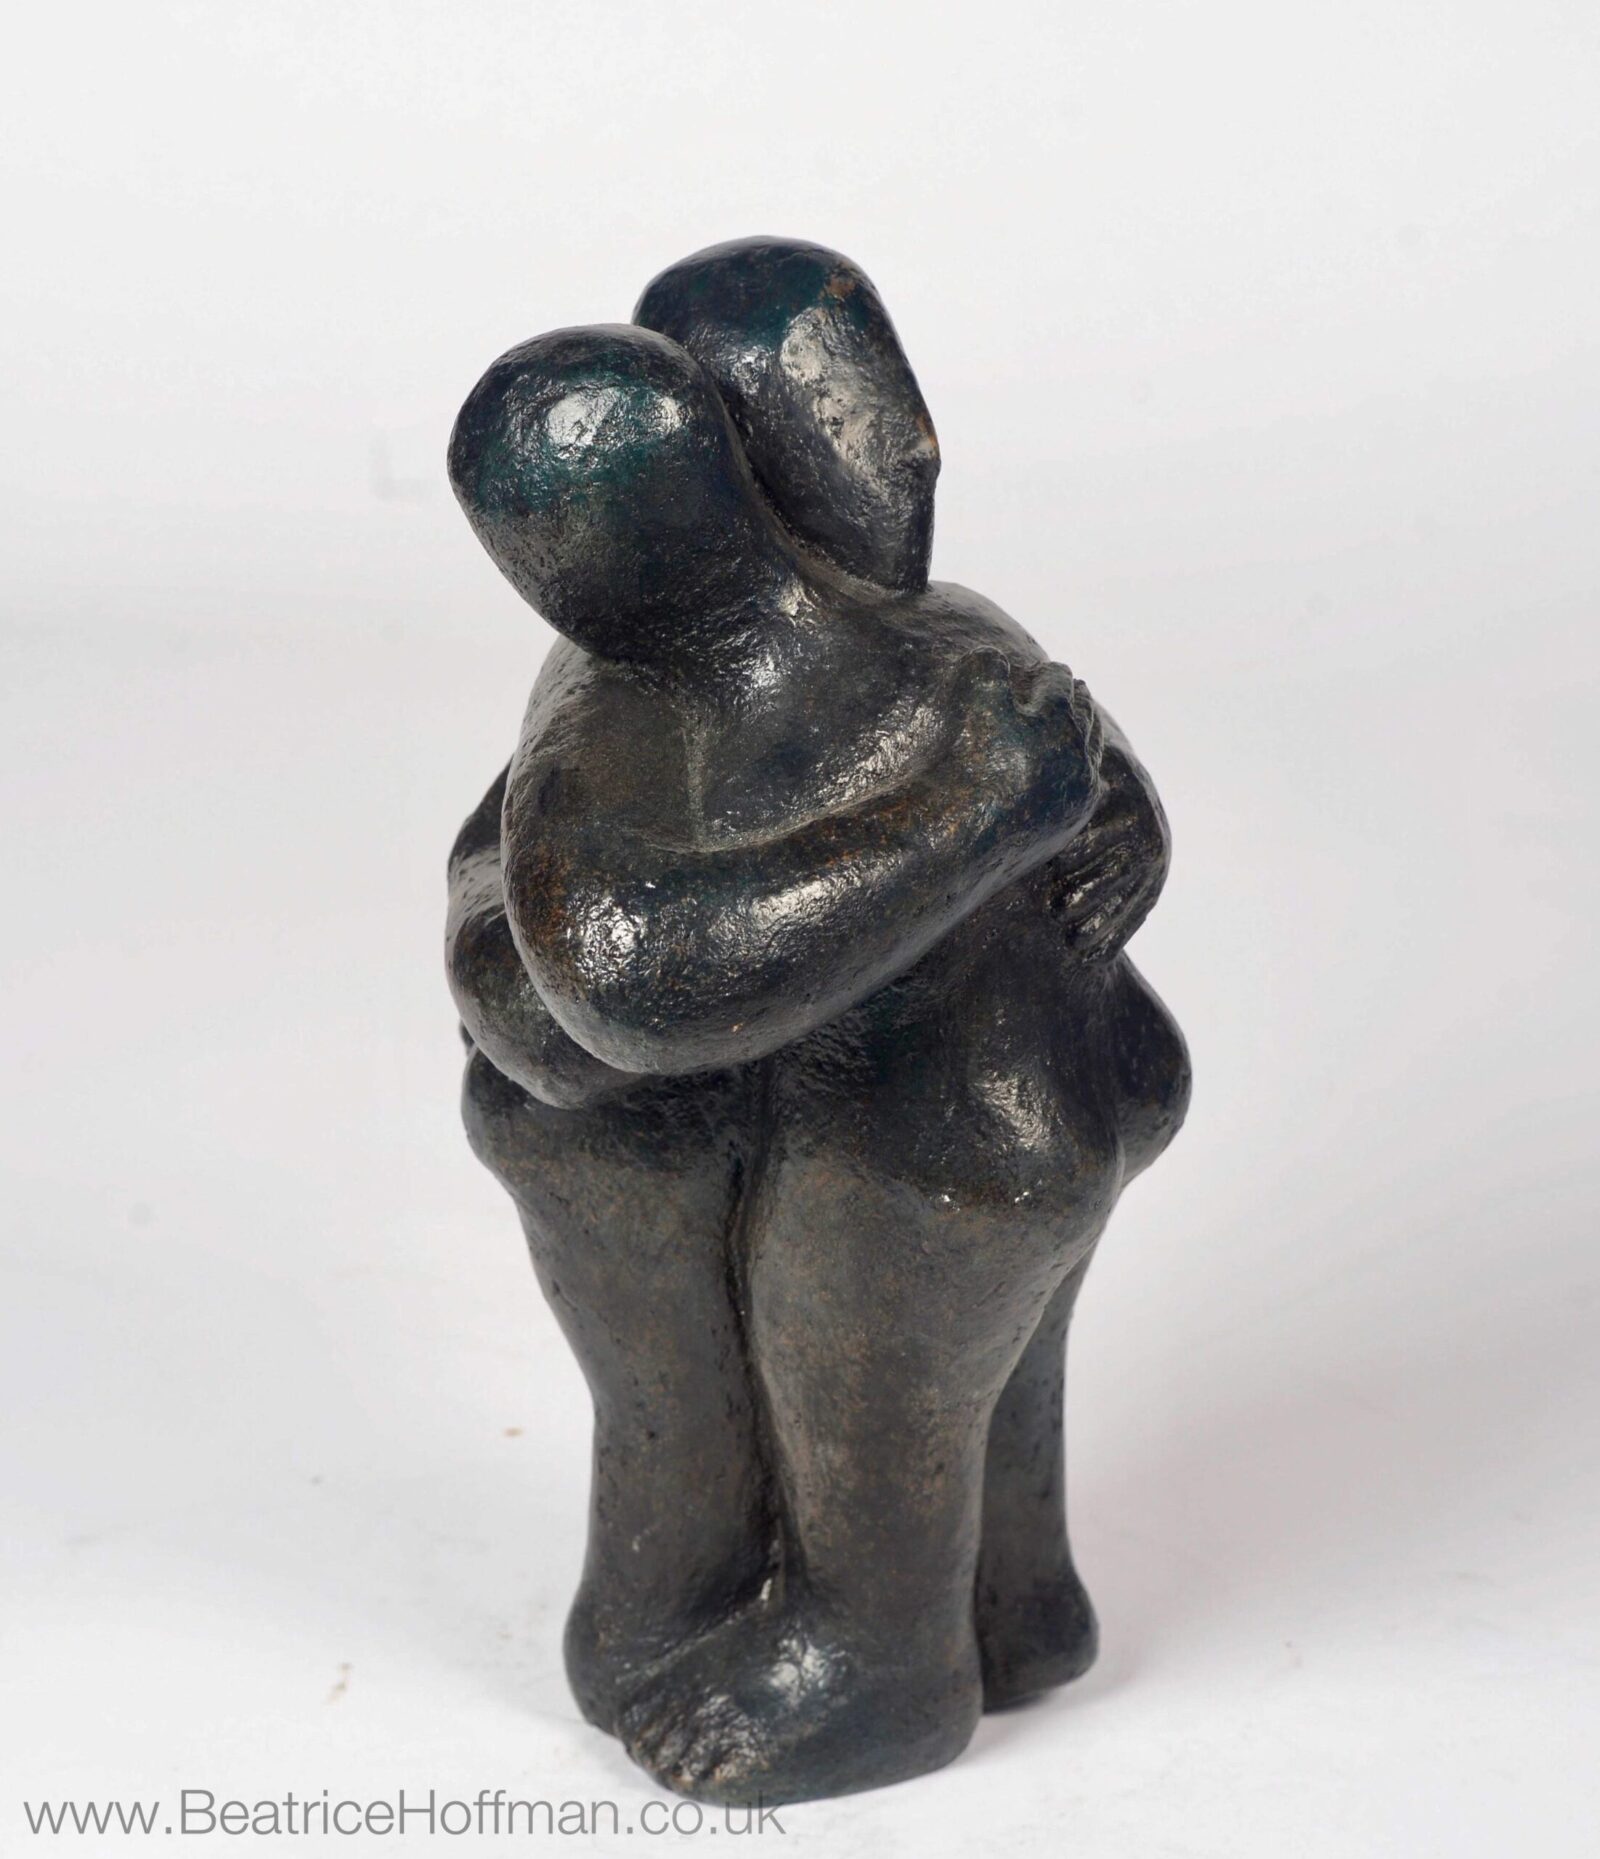 modern affectionate bronze sculpture of a hugg for a wedding anniversary